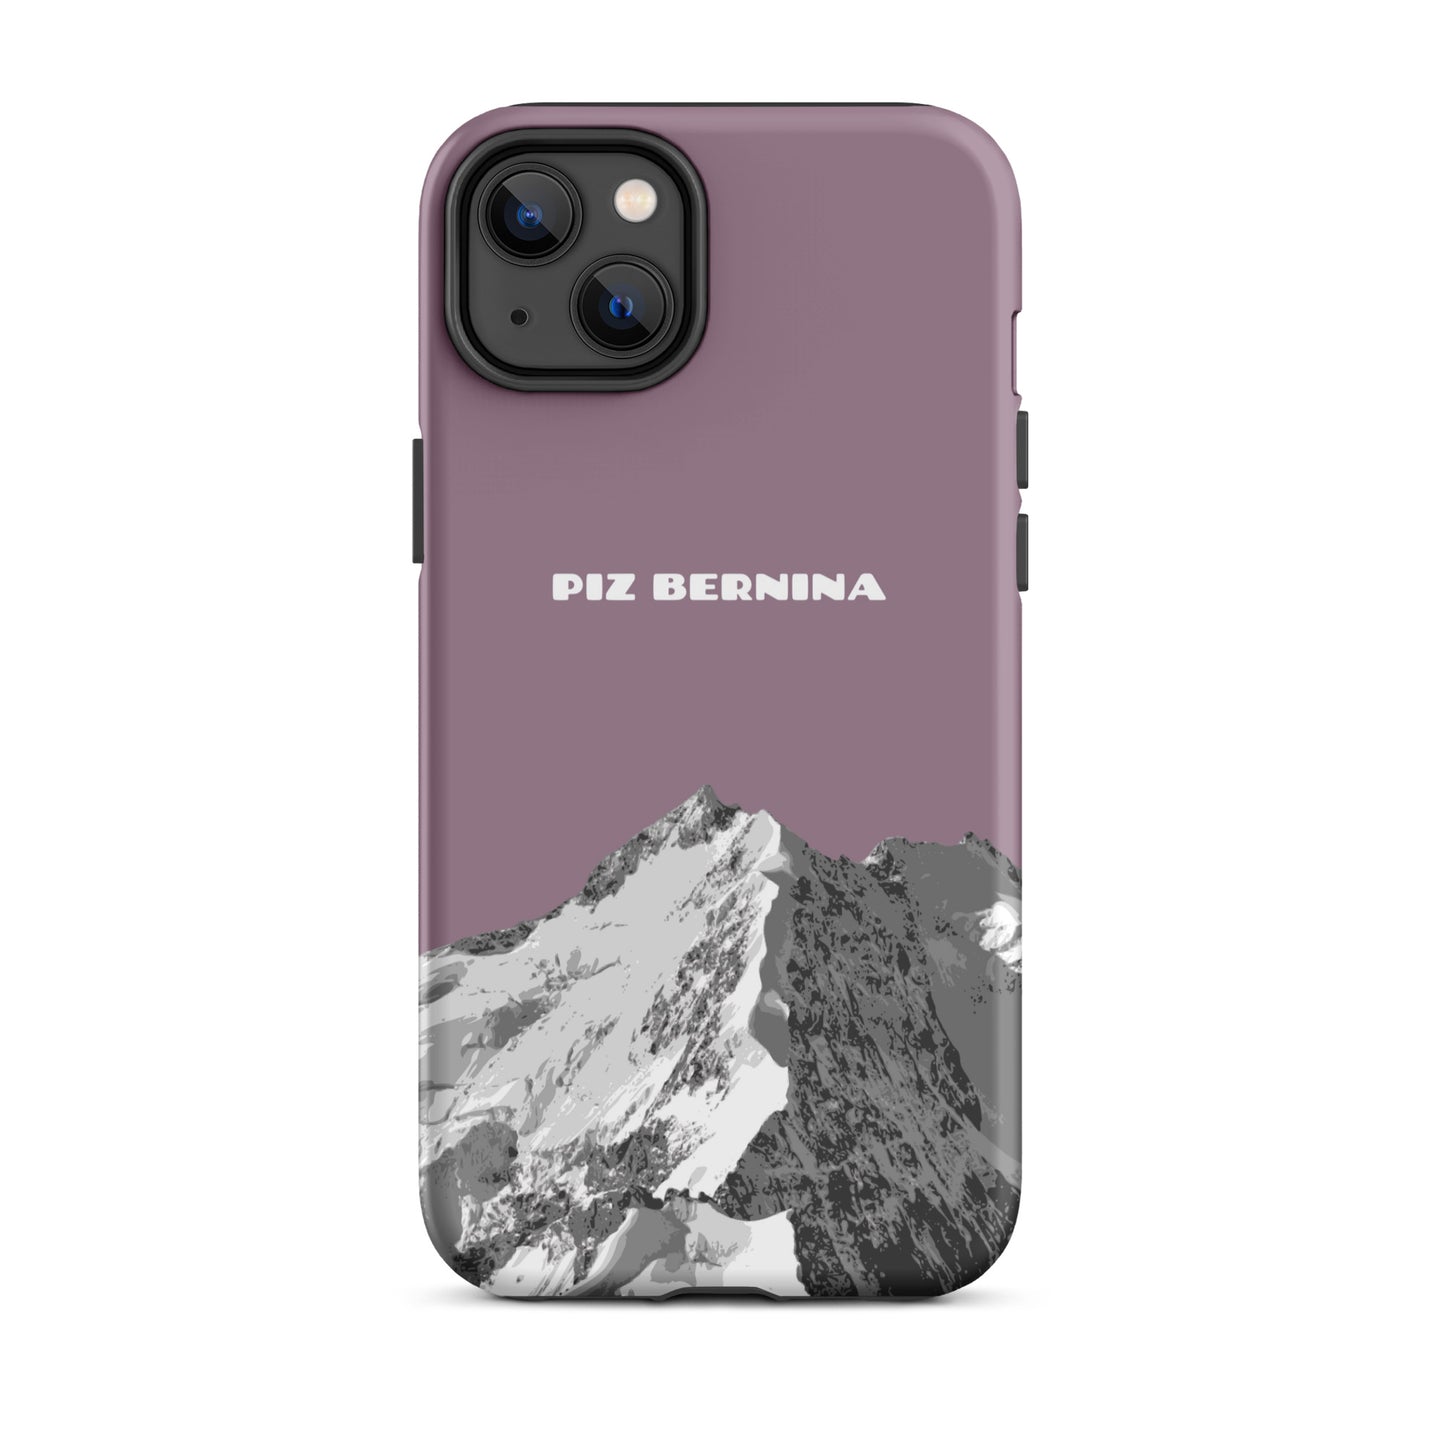 Hülle für das iPhone 14 Plus von Apple in der Farbe Pastellviolett, dass den Piz Bernina in Graubünden zeigt.